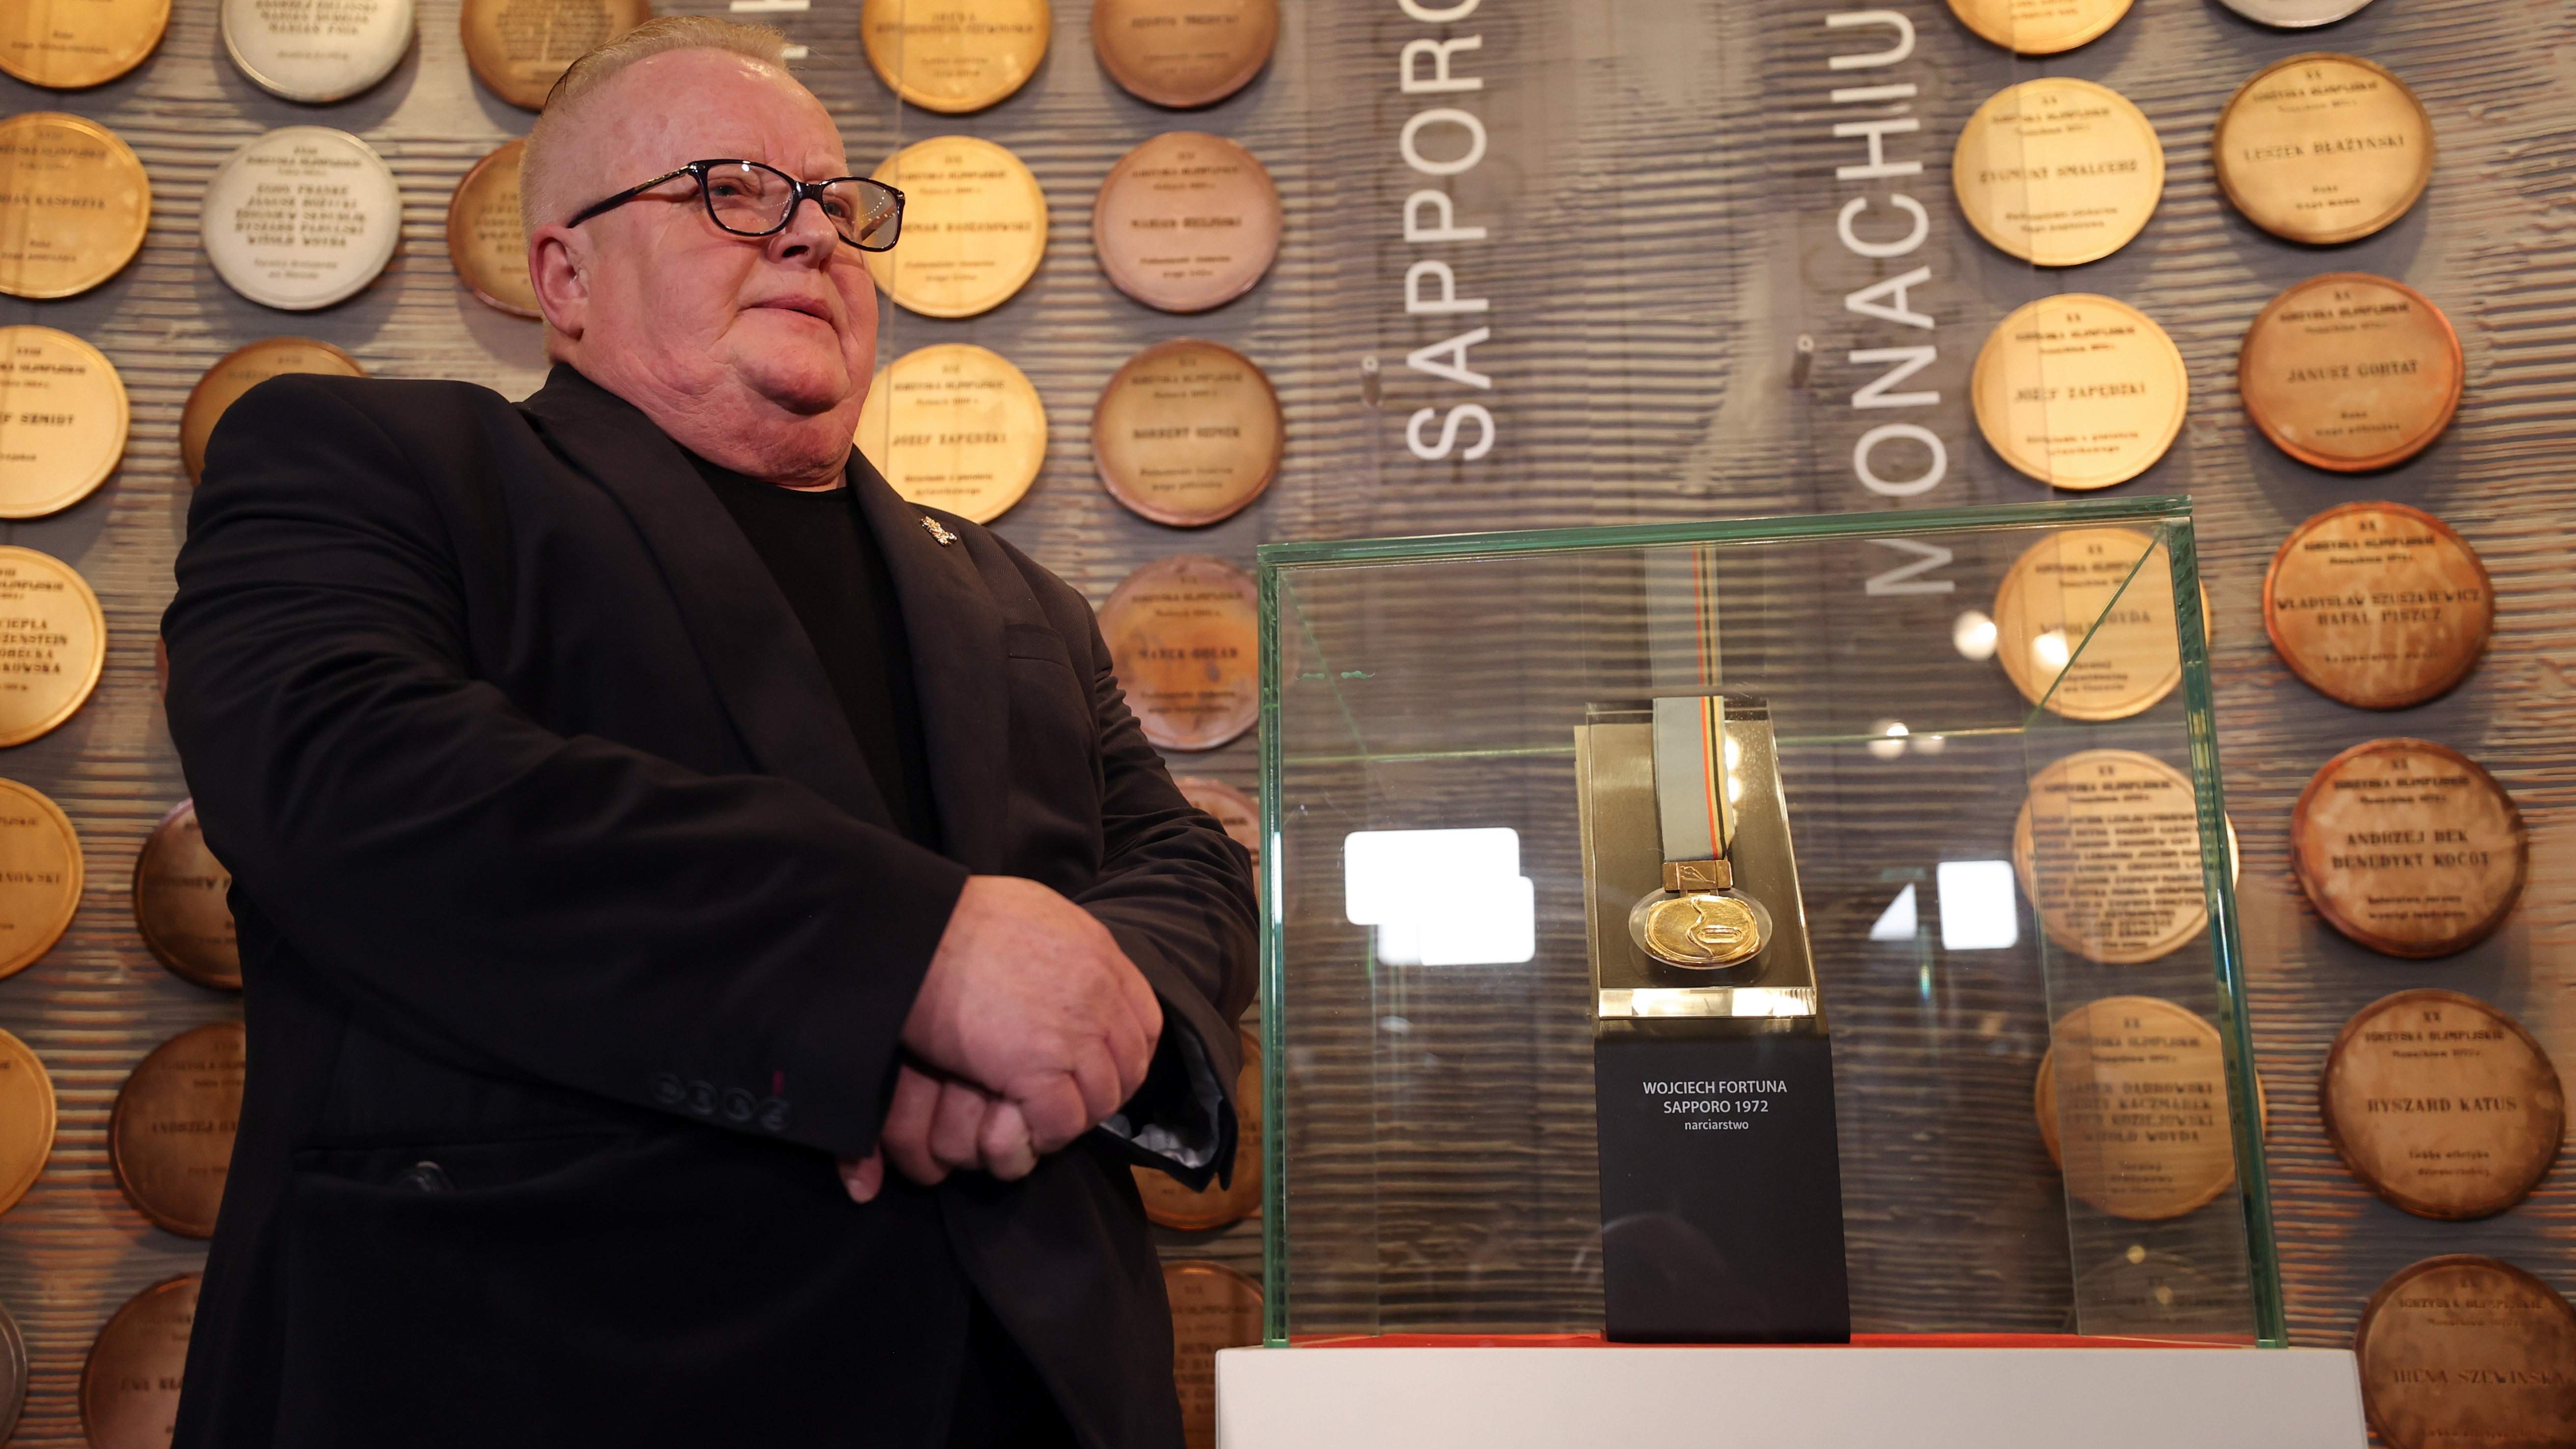 Wojciech Fortuna 50 lat po zdobyciu złota w Sapporo. "Medalu mogło nie być"